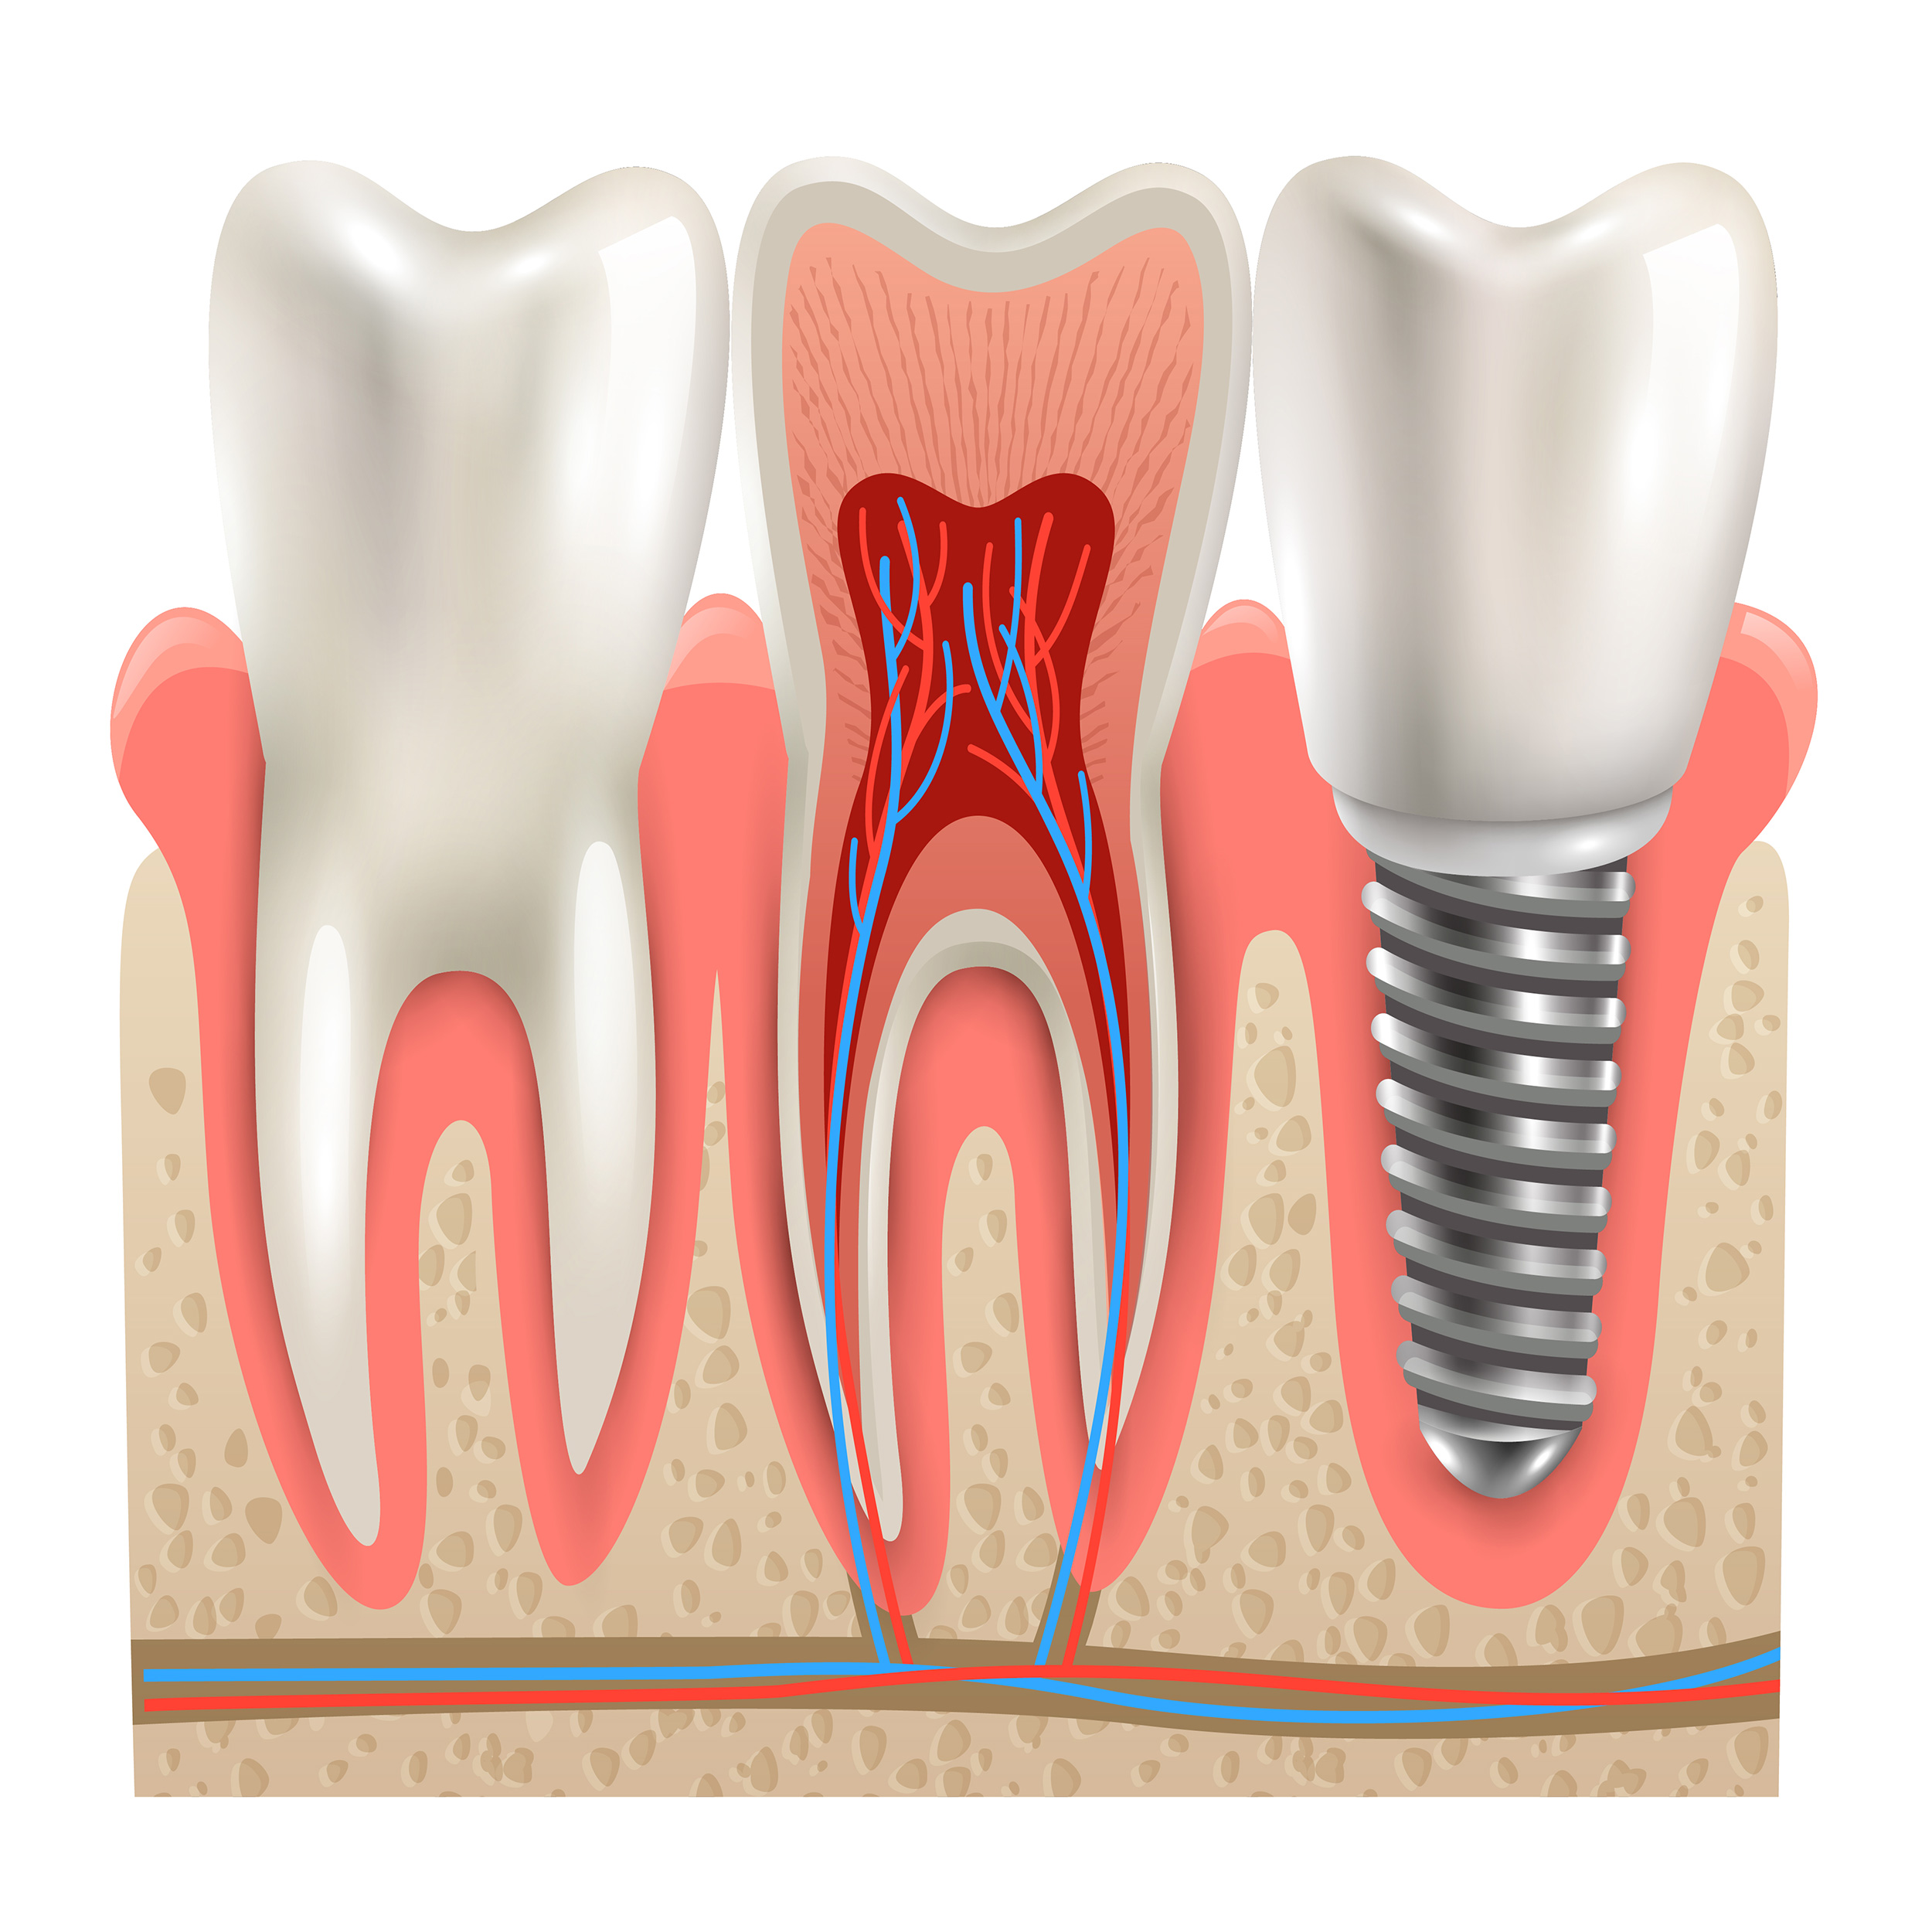 مهم‌ترین مزیت پیوند استخوان فک، بالا بردن احتمال موفقیت ایمپلنت دندان و کاشت دندان است.